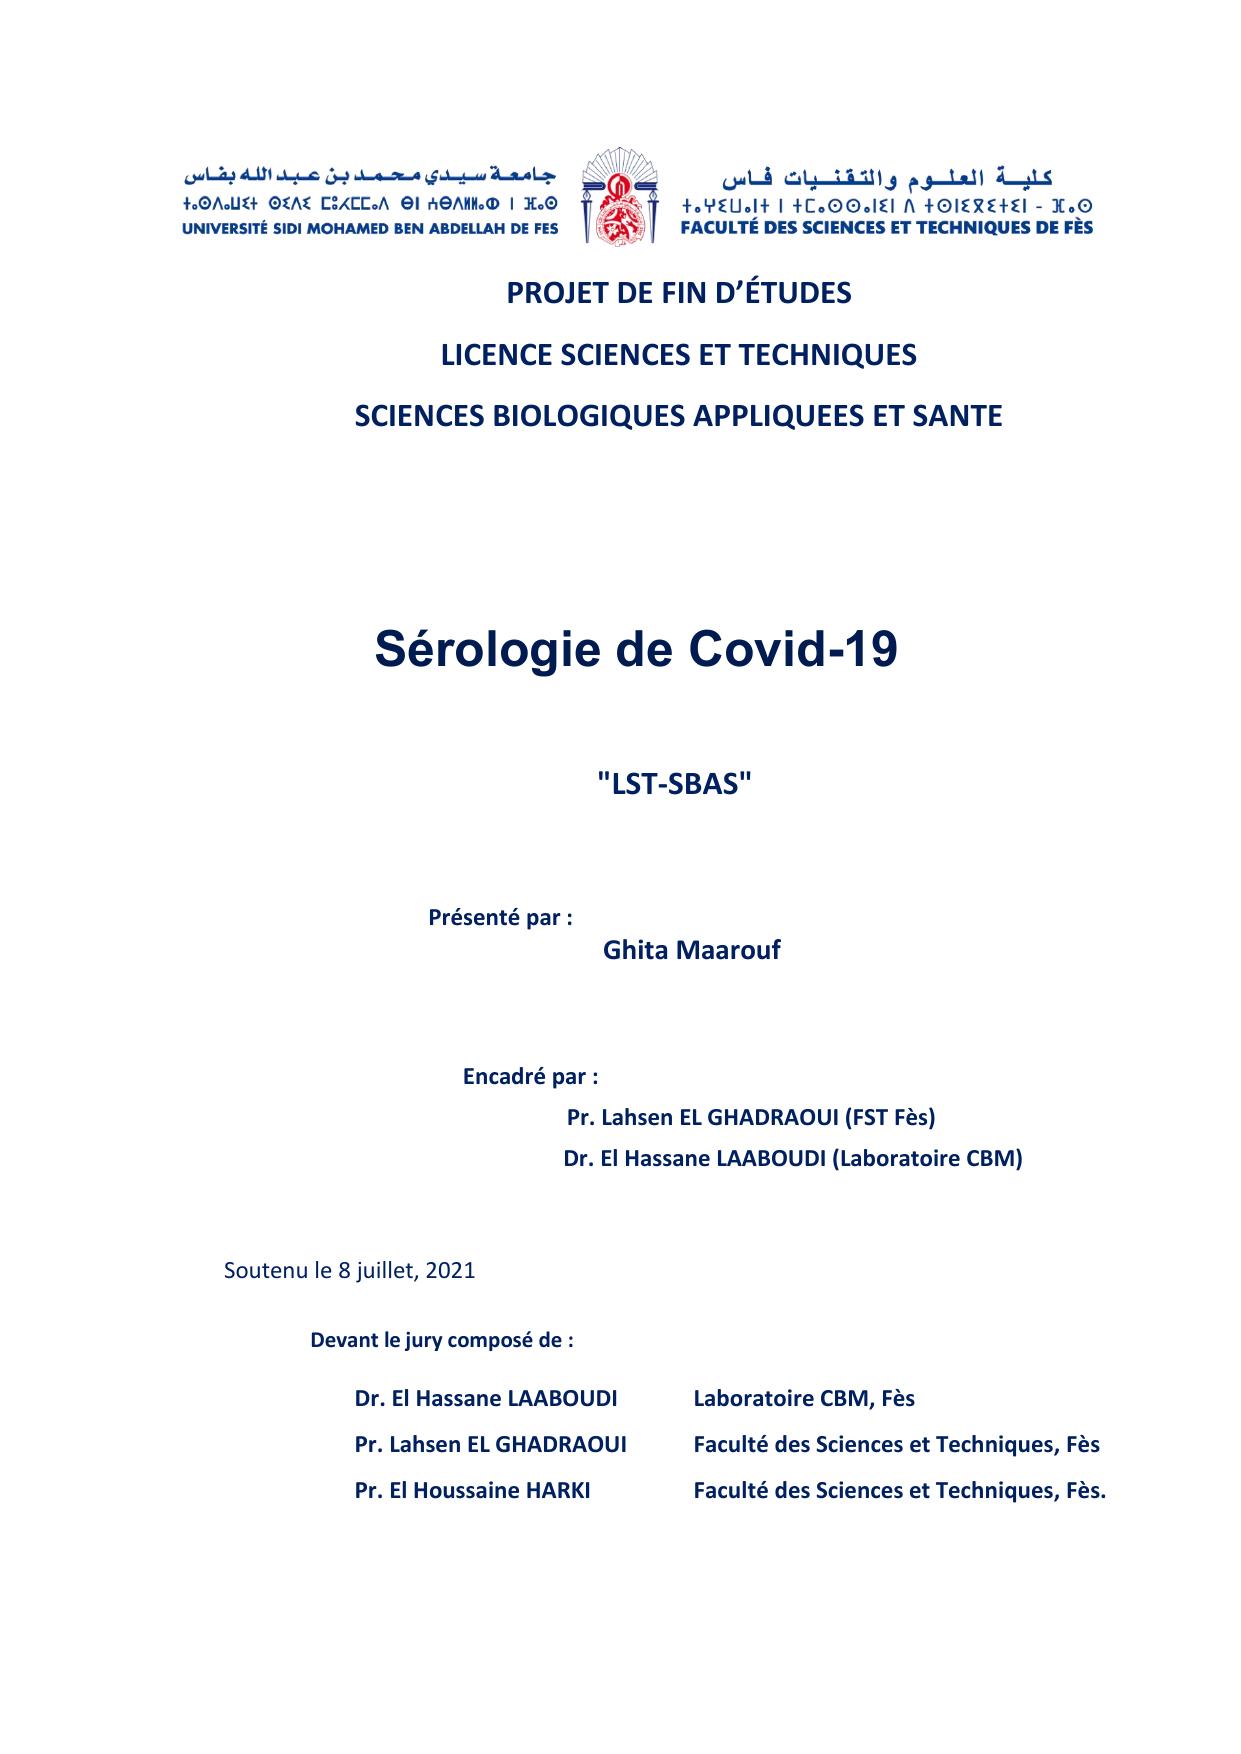 Sérologie de Covid-19